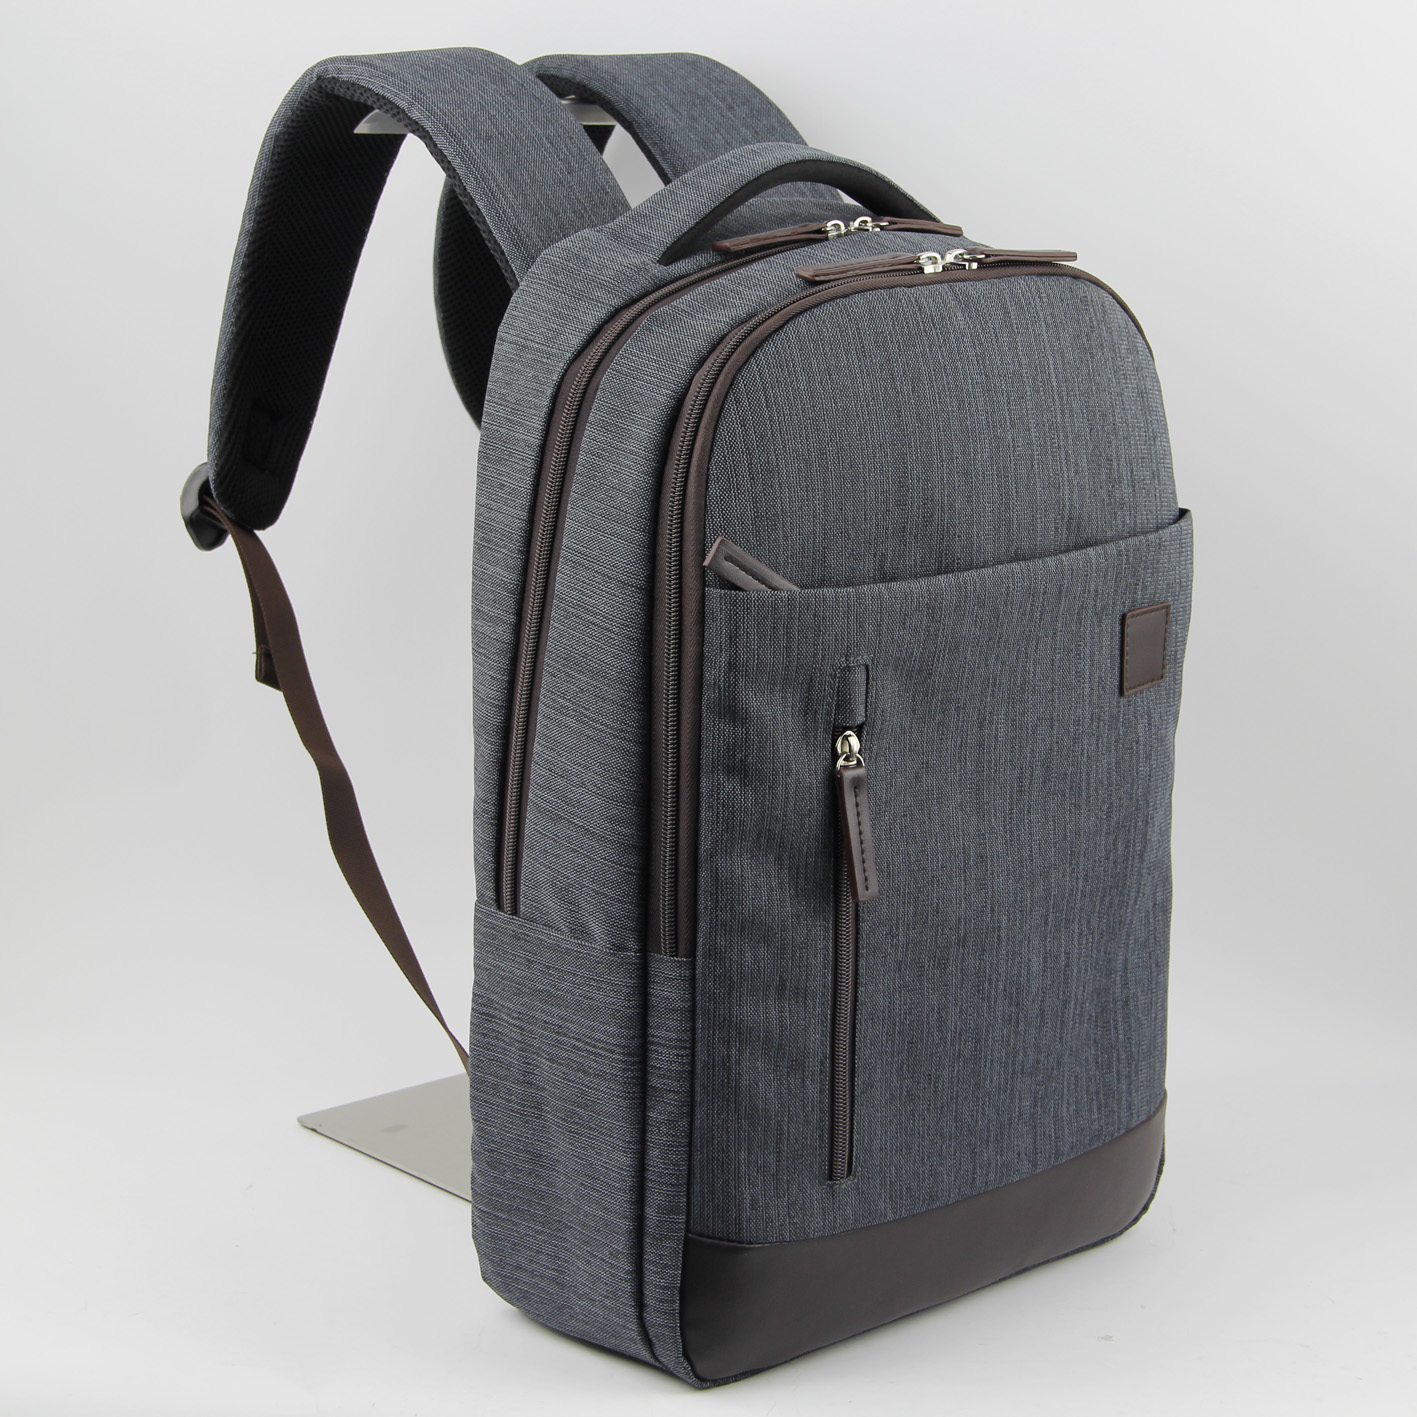 Nylon leisure travel backpack